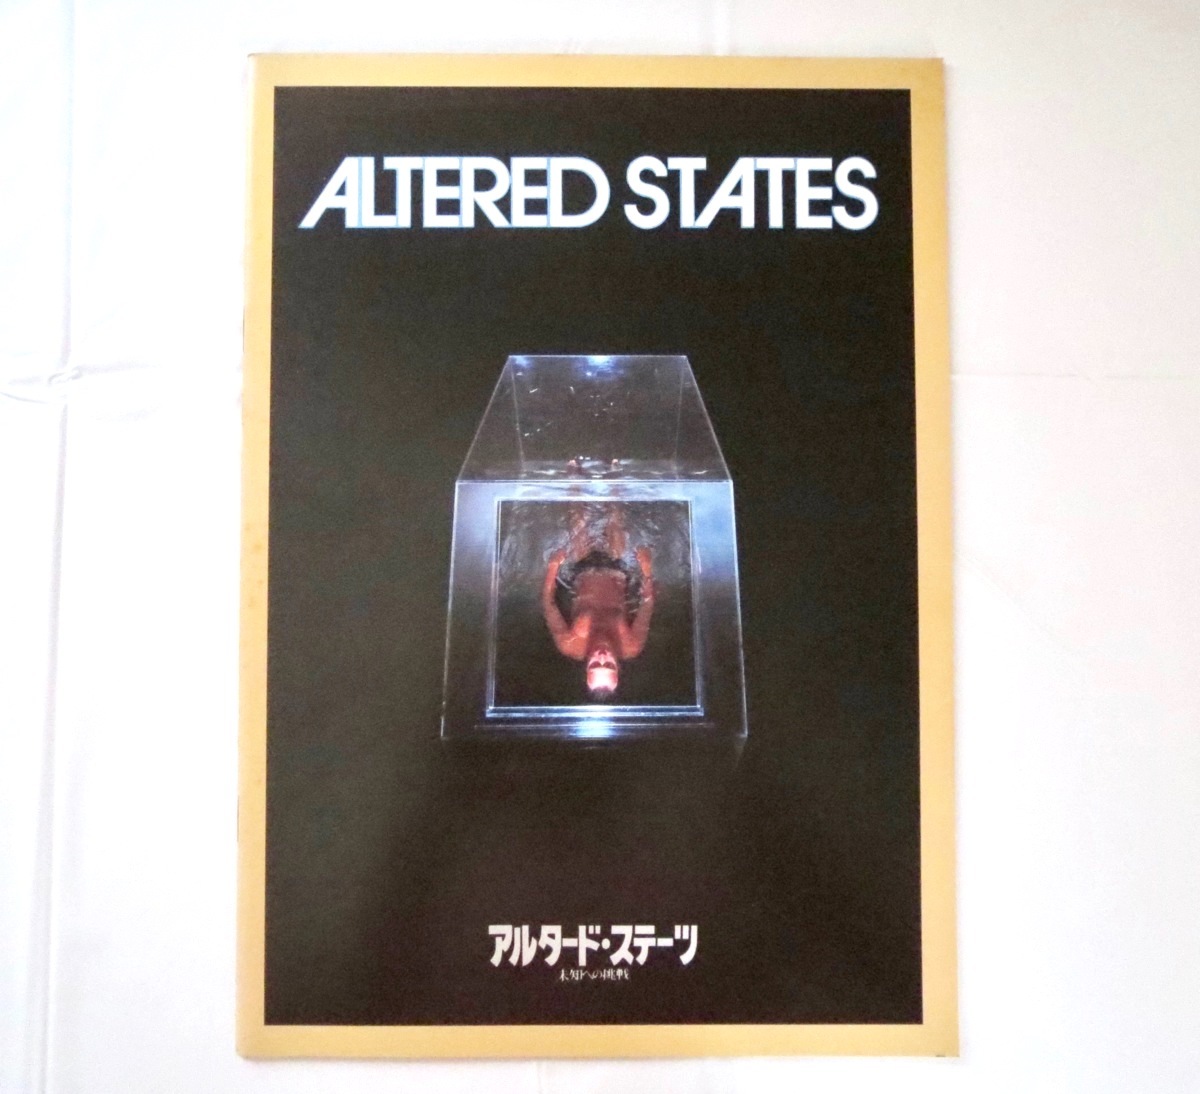 映画パンフレット「アルタード・ステーツ/未知への挑戦」1981年公開・アメリカ作品/ケン・ラッセル ジョン・C・リリー ウィリアム・ハート_画像1